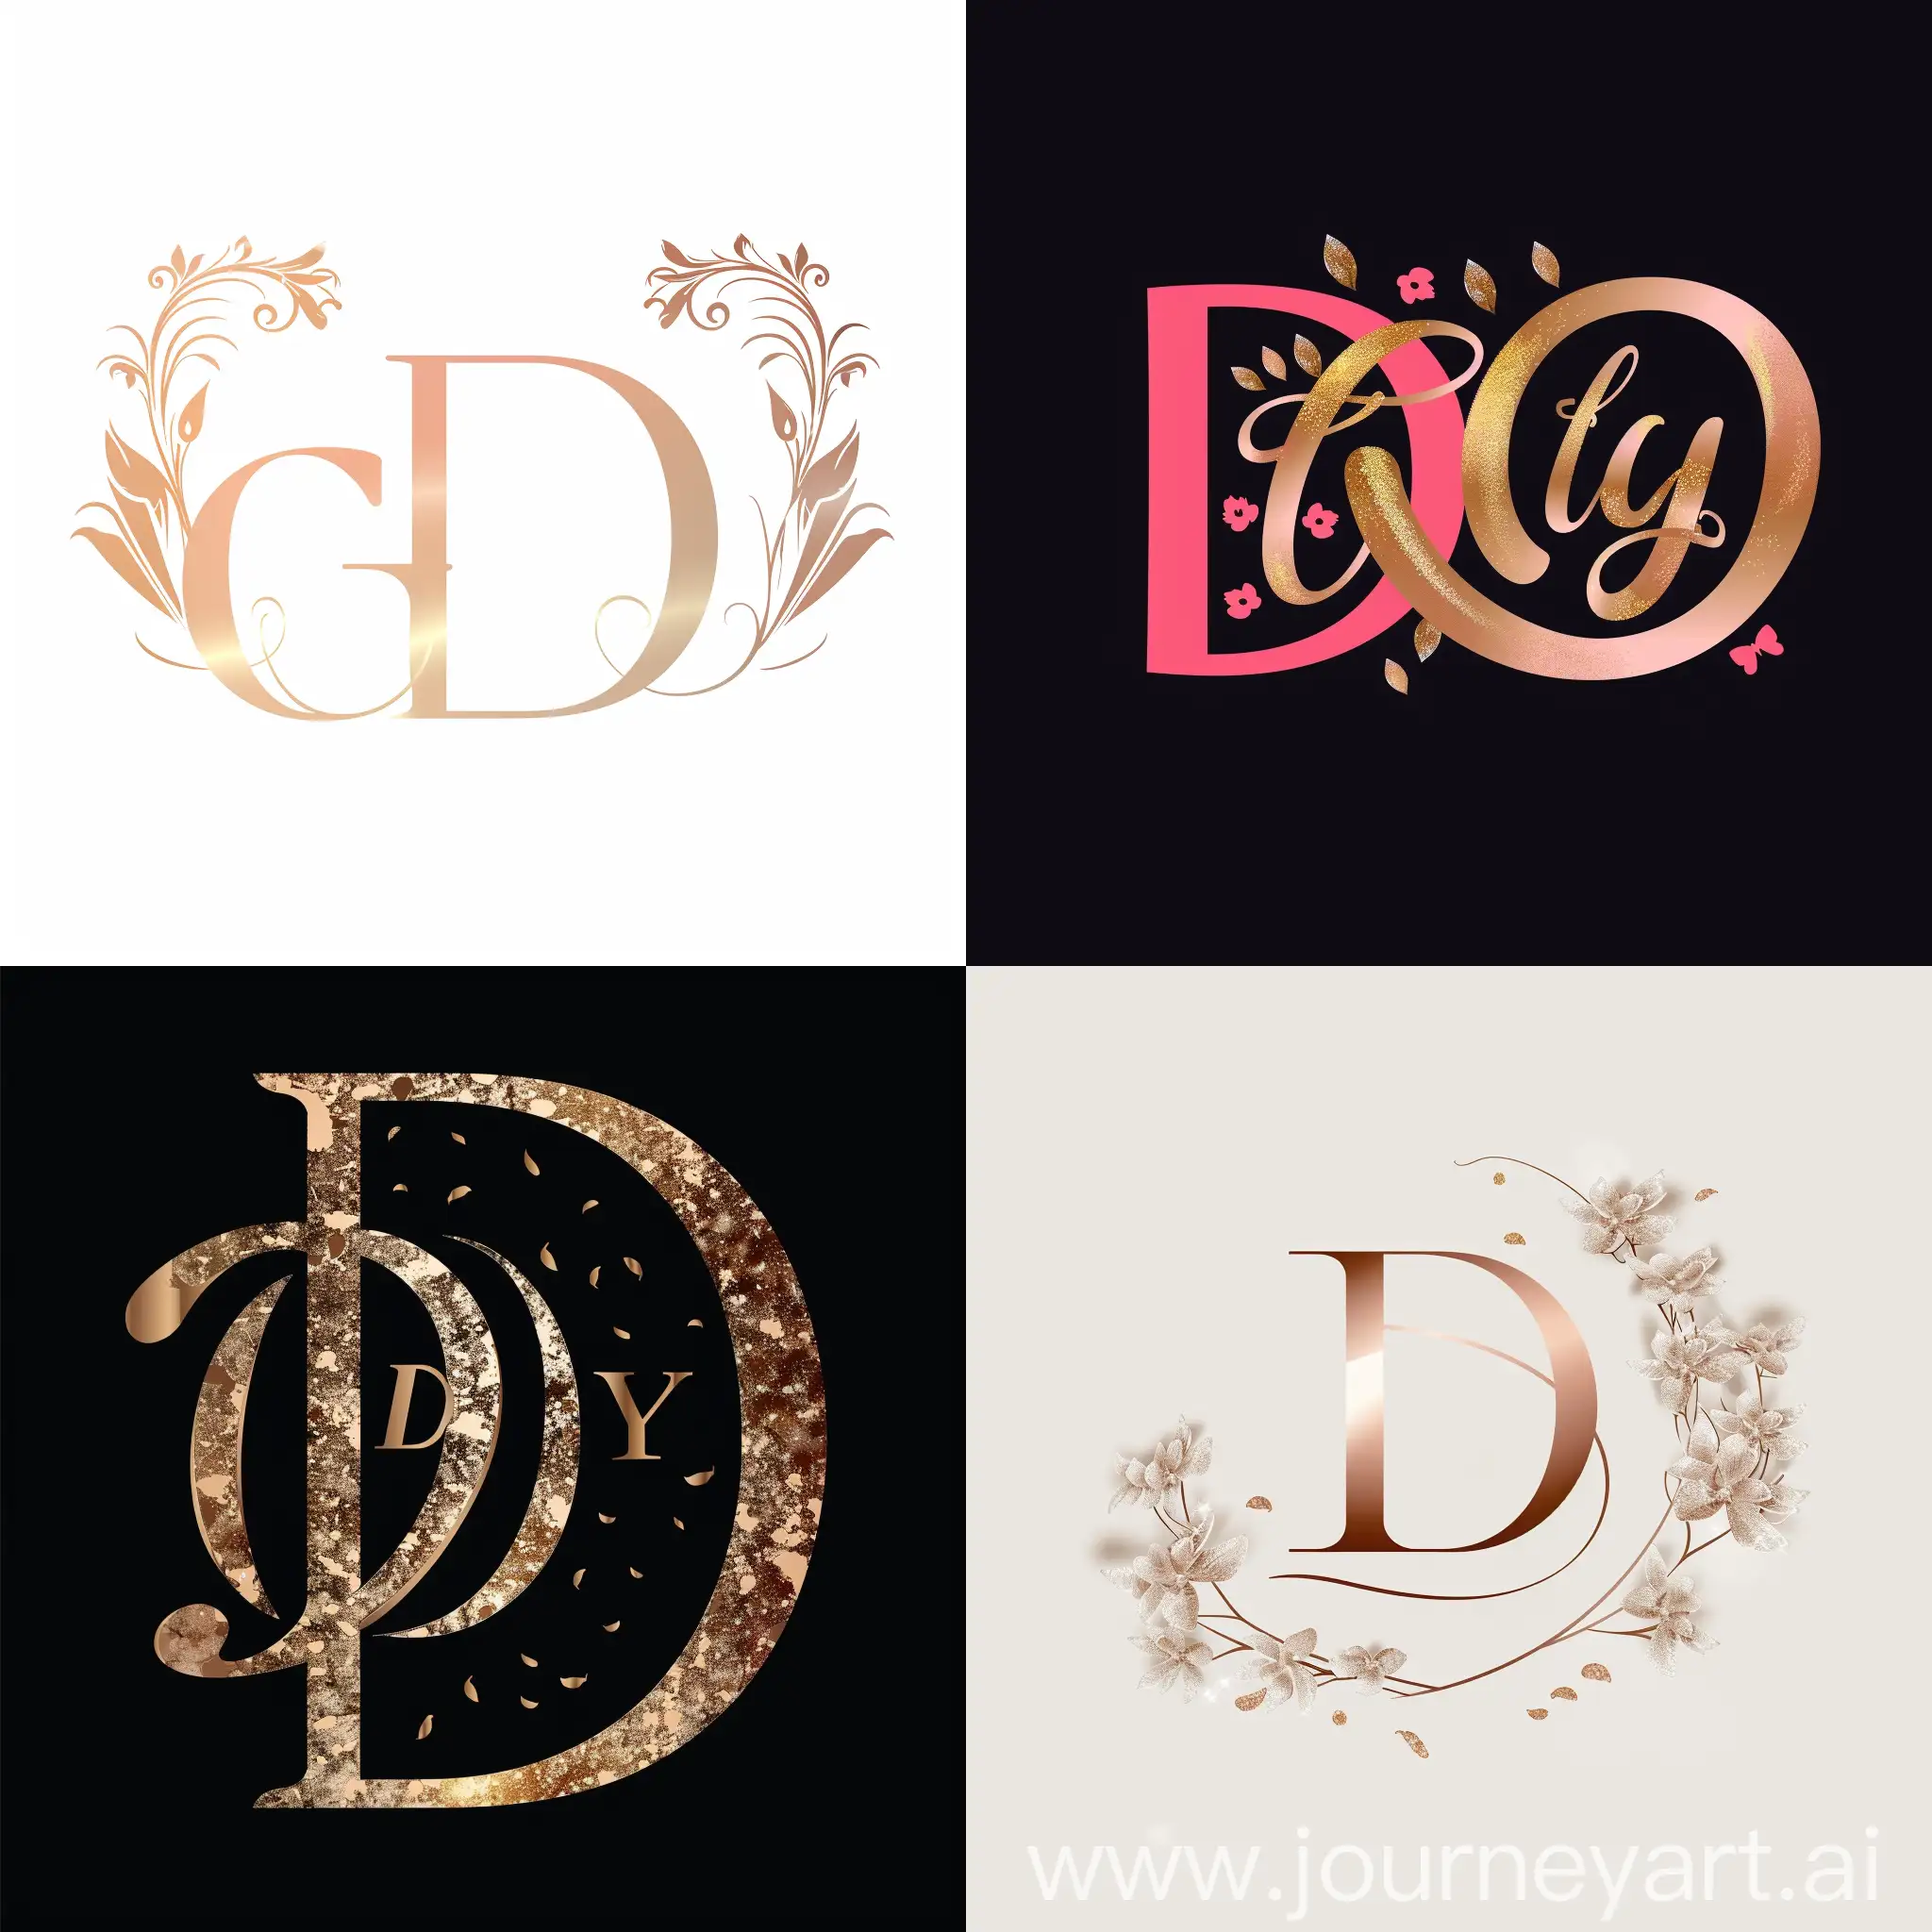 一个大写字母D和一个大写字母G组成的婚礼logo，有浪漫的元素